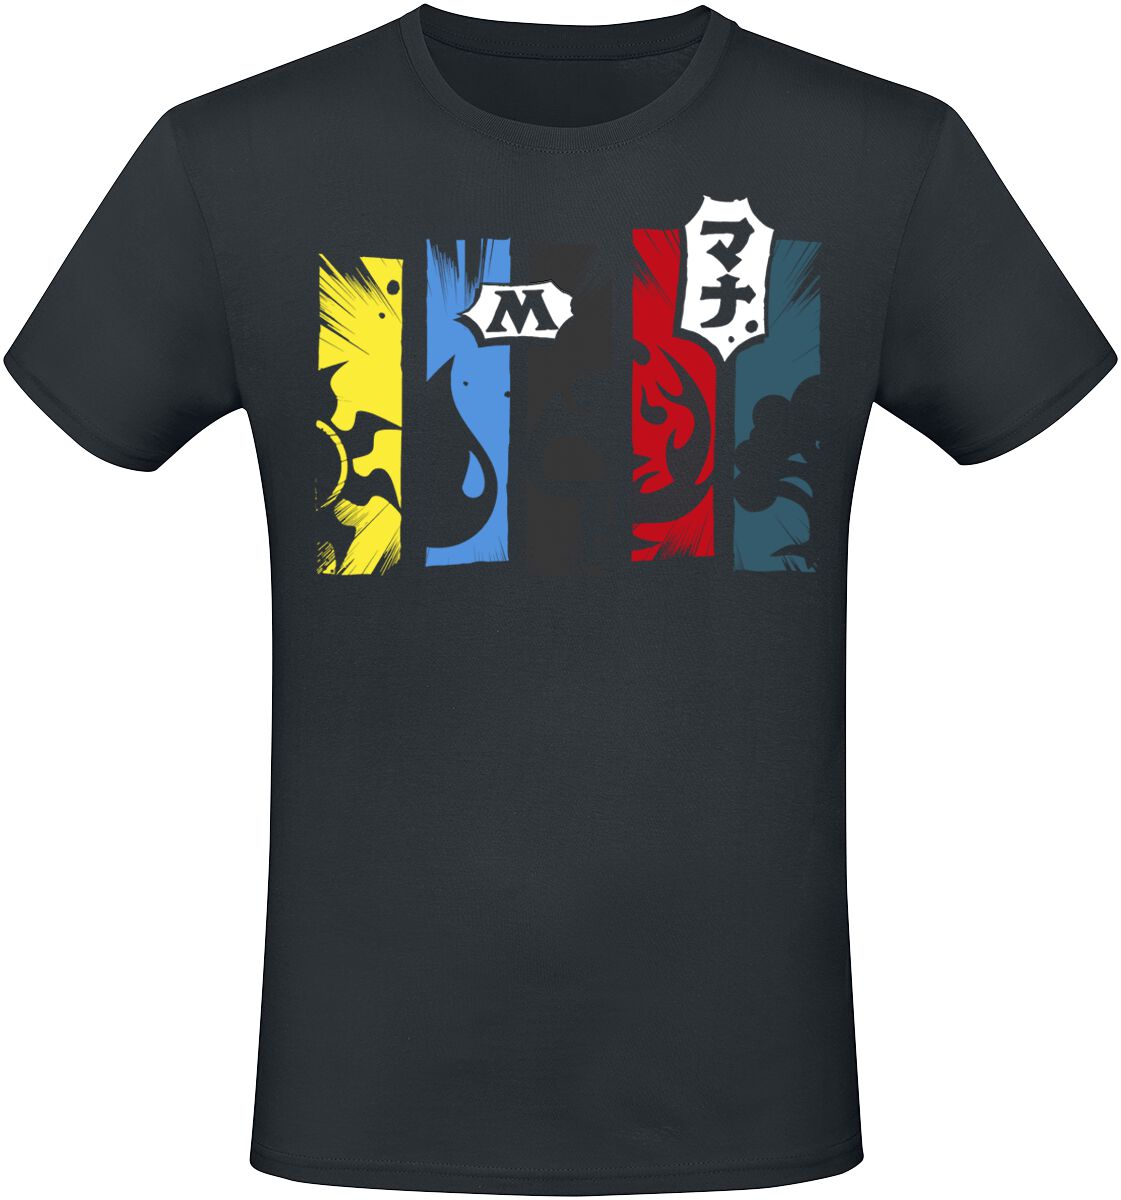 Magic: The Gathering - Gaming T-Shirt - Mana - S bis XXL - für Männer - Größe L - schwarz  - EMP exklusives Merchandise!